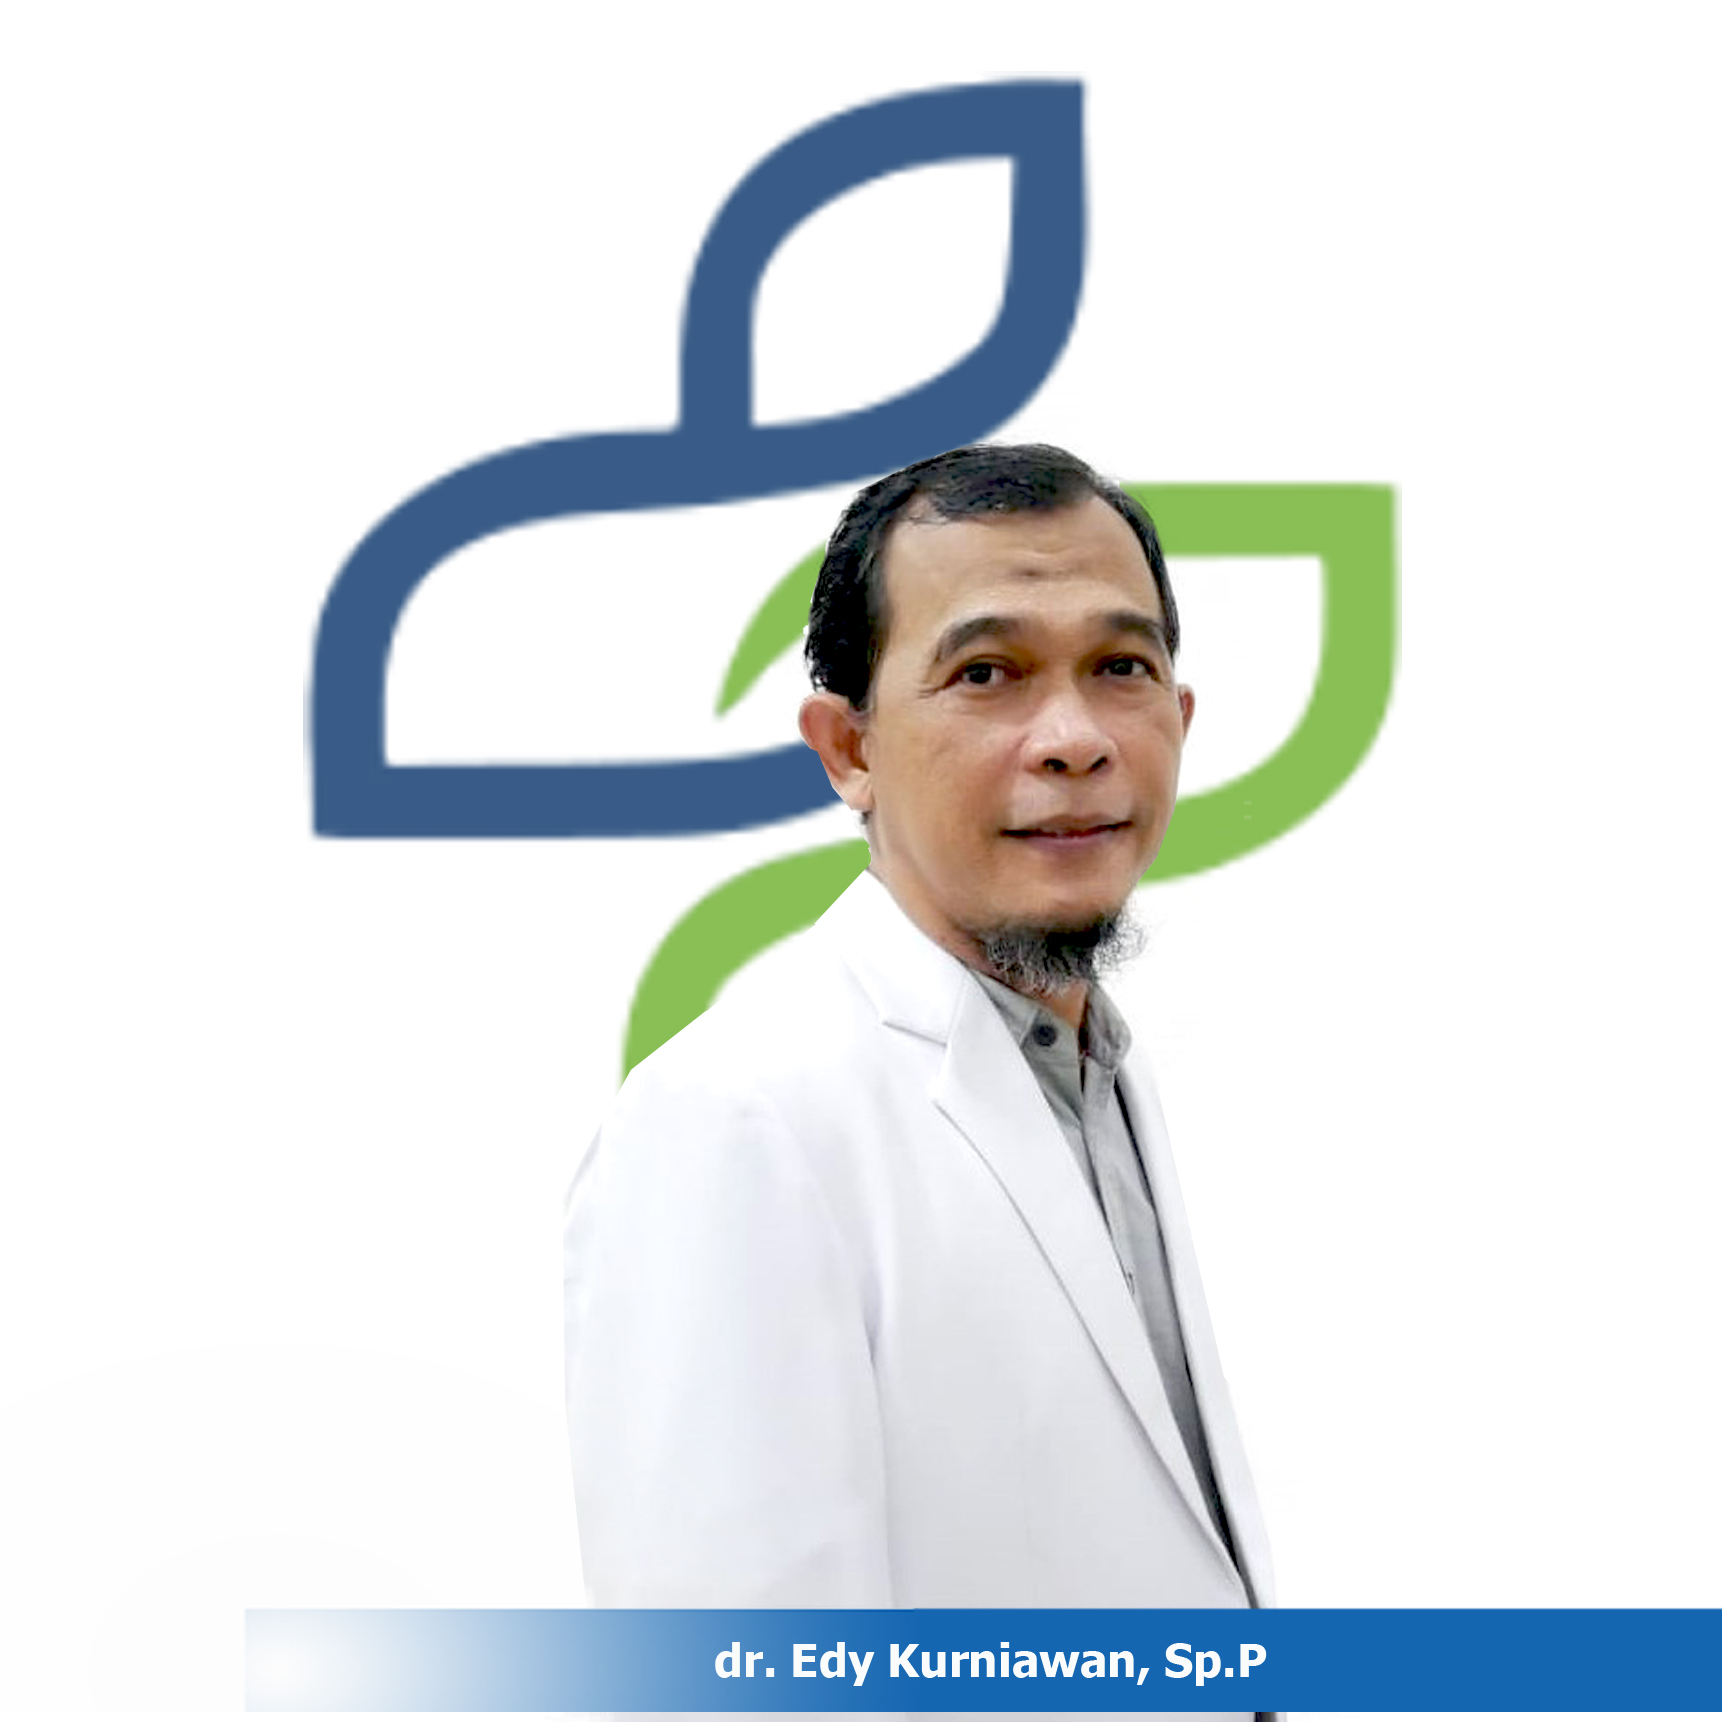 dr. Edy Kurniawan, Sp.P